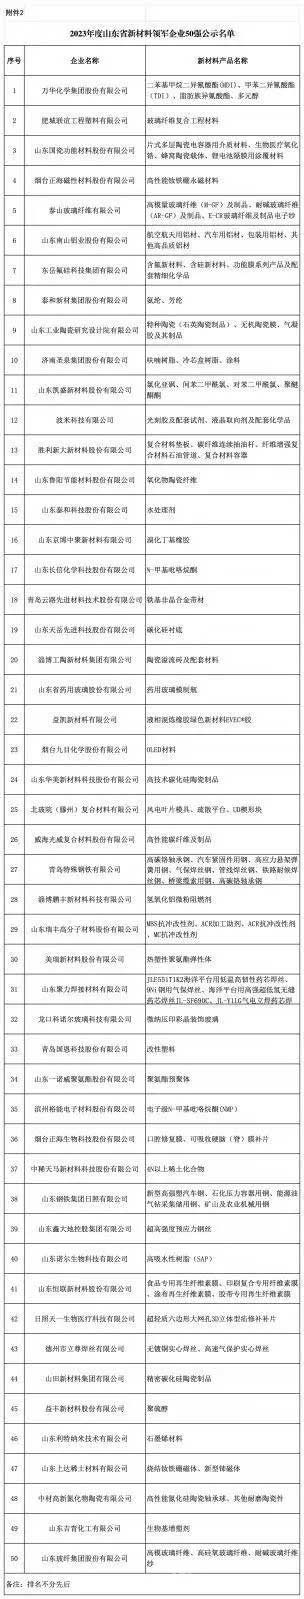 2023年山东省新材料领军企业50强公示名单